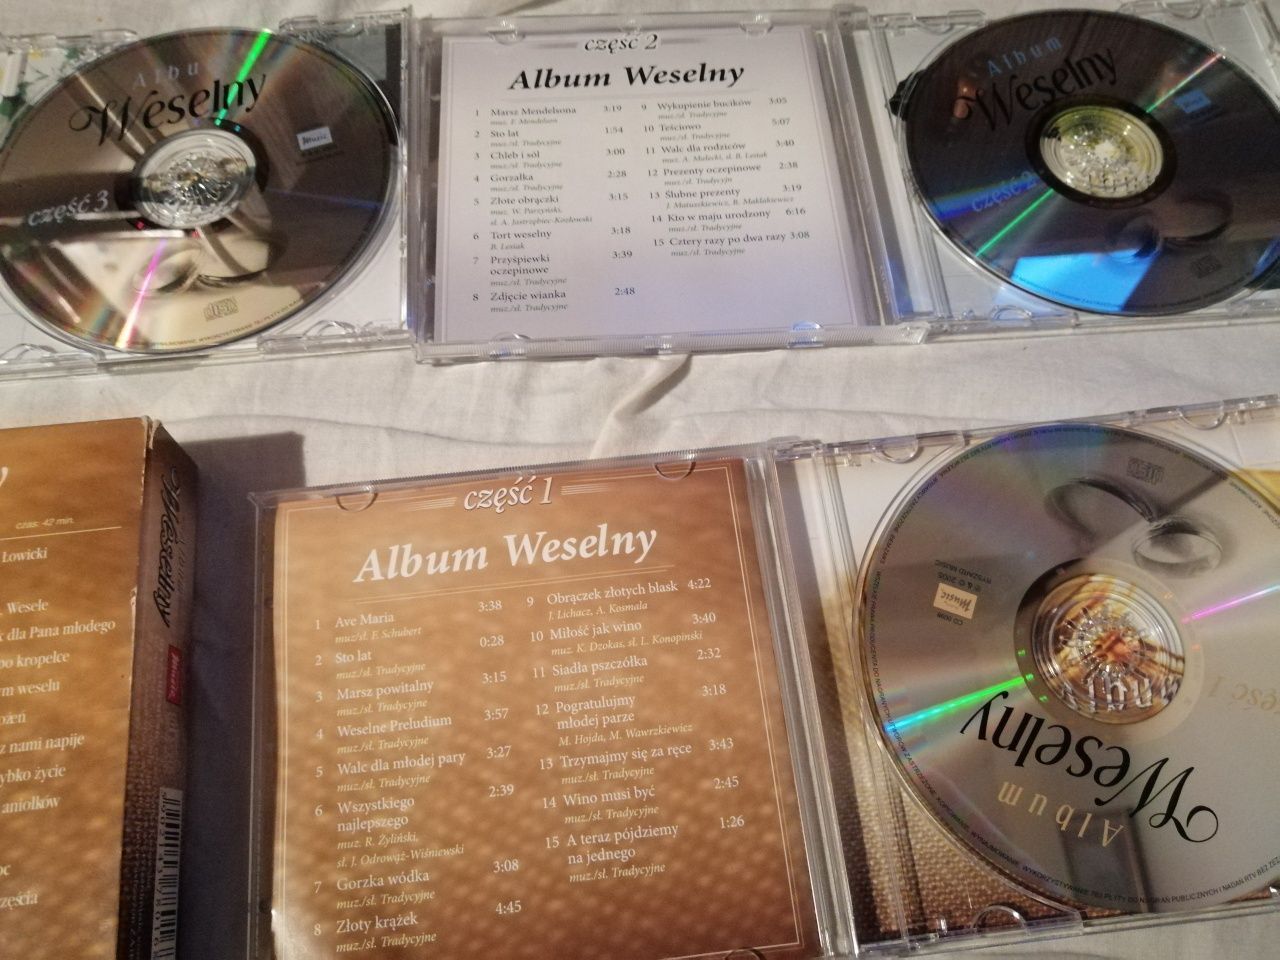 Album Weselny  3cd